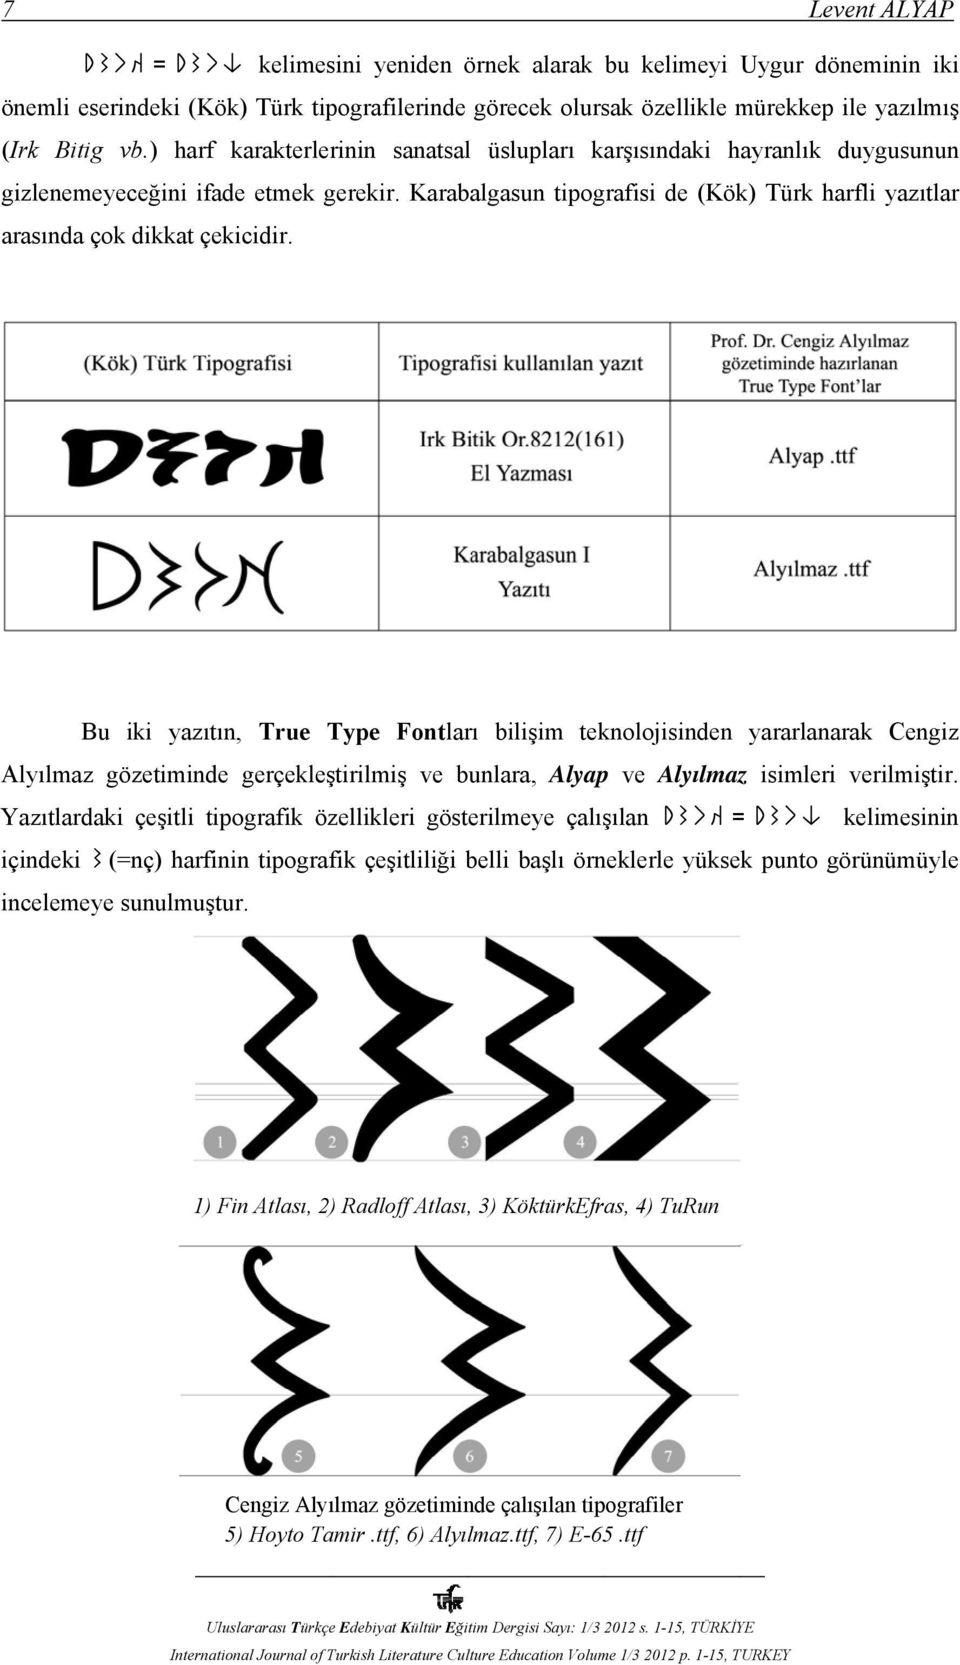 Bu iki yazıtın, True Type Fontları bilişim teknolojisinden yararlanarak Cengiz Alyılmaz gözetiminde gerçekleştirilmiş ve bunlara, Alyap ve Alyılmaz isimleri verilmiştir.